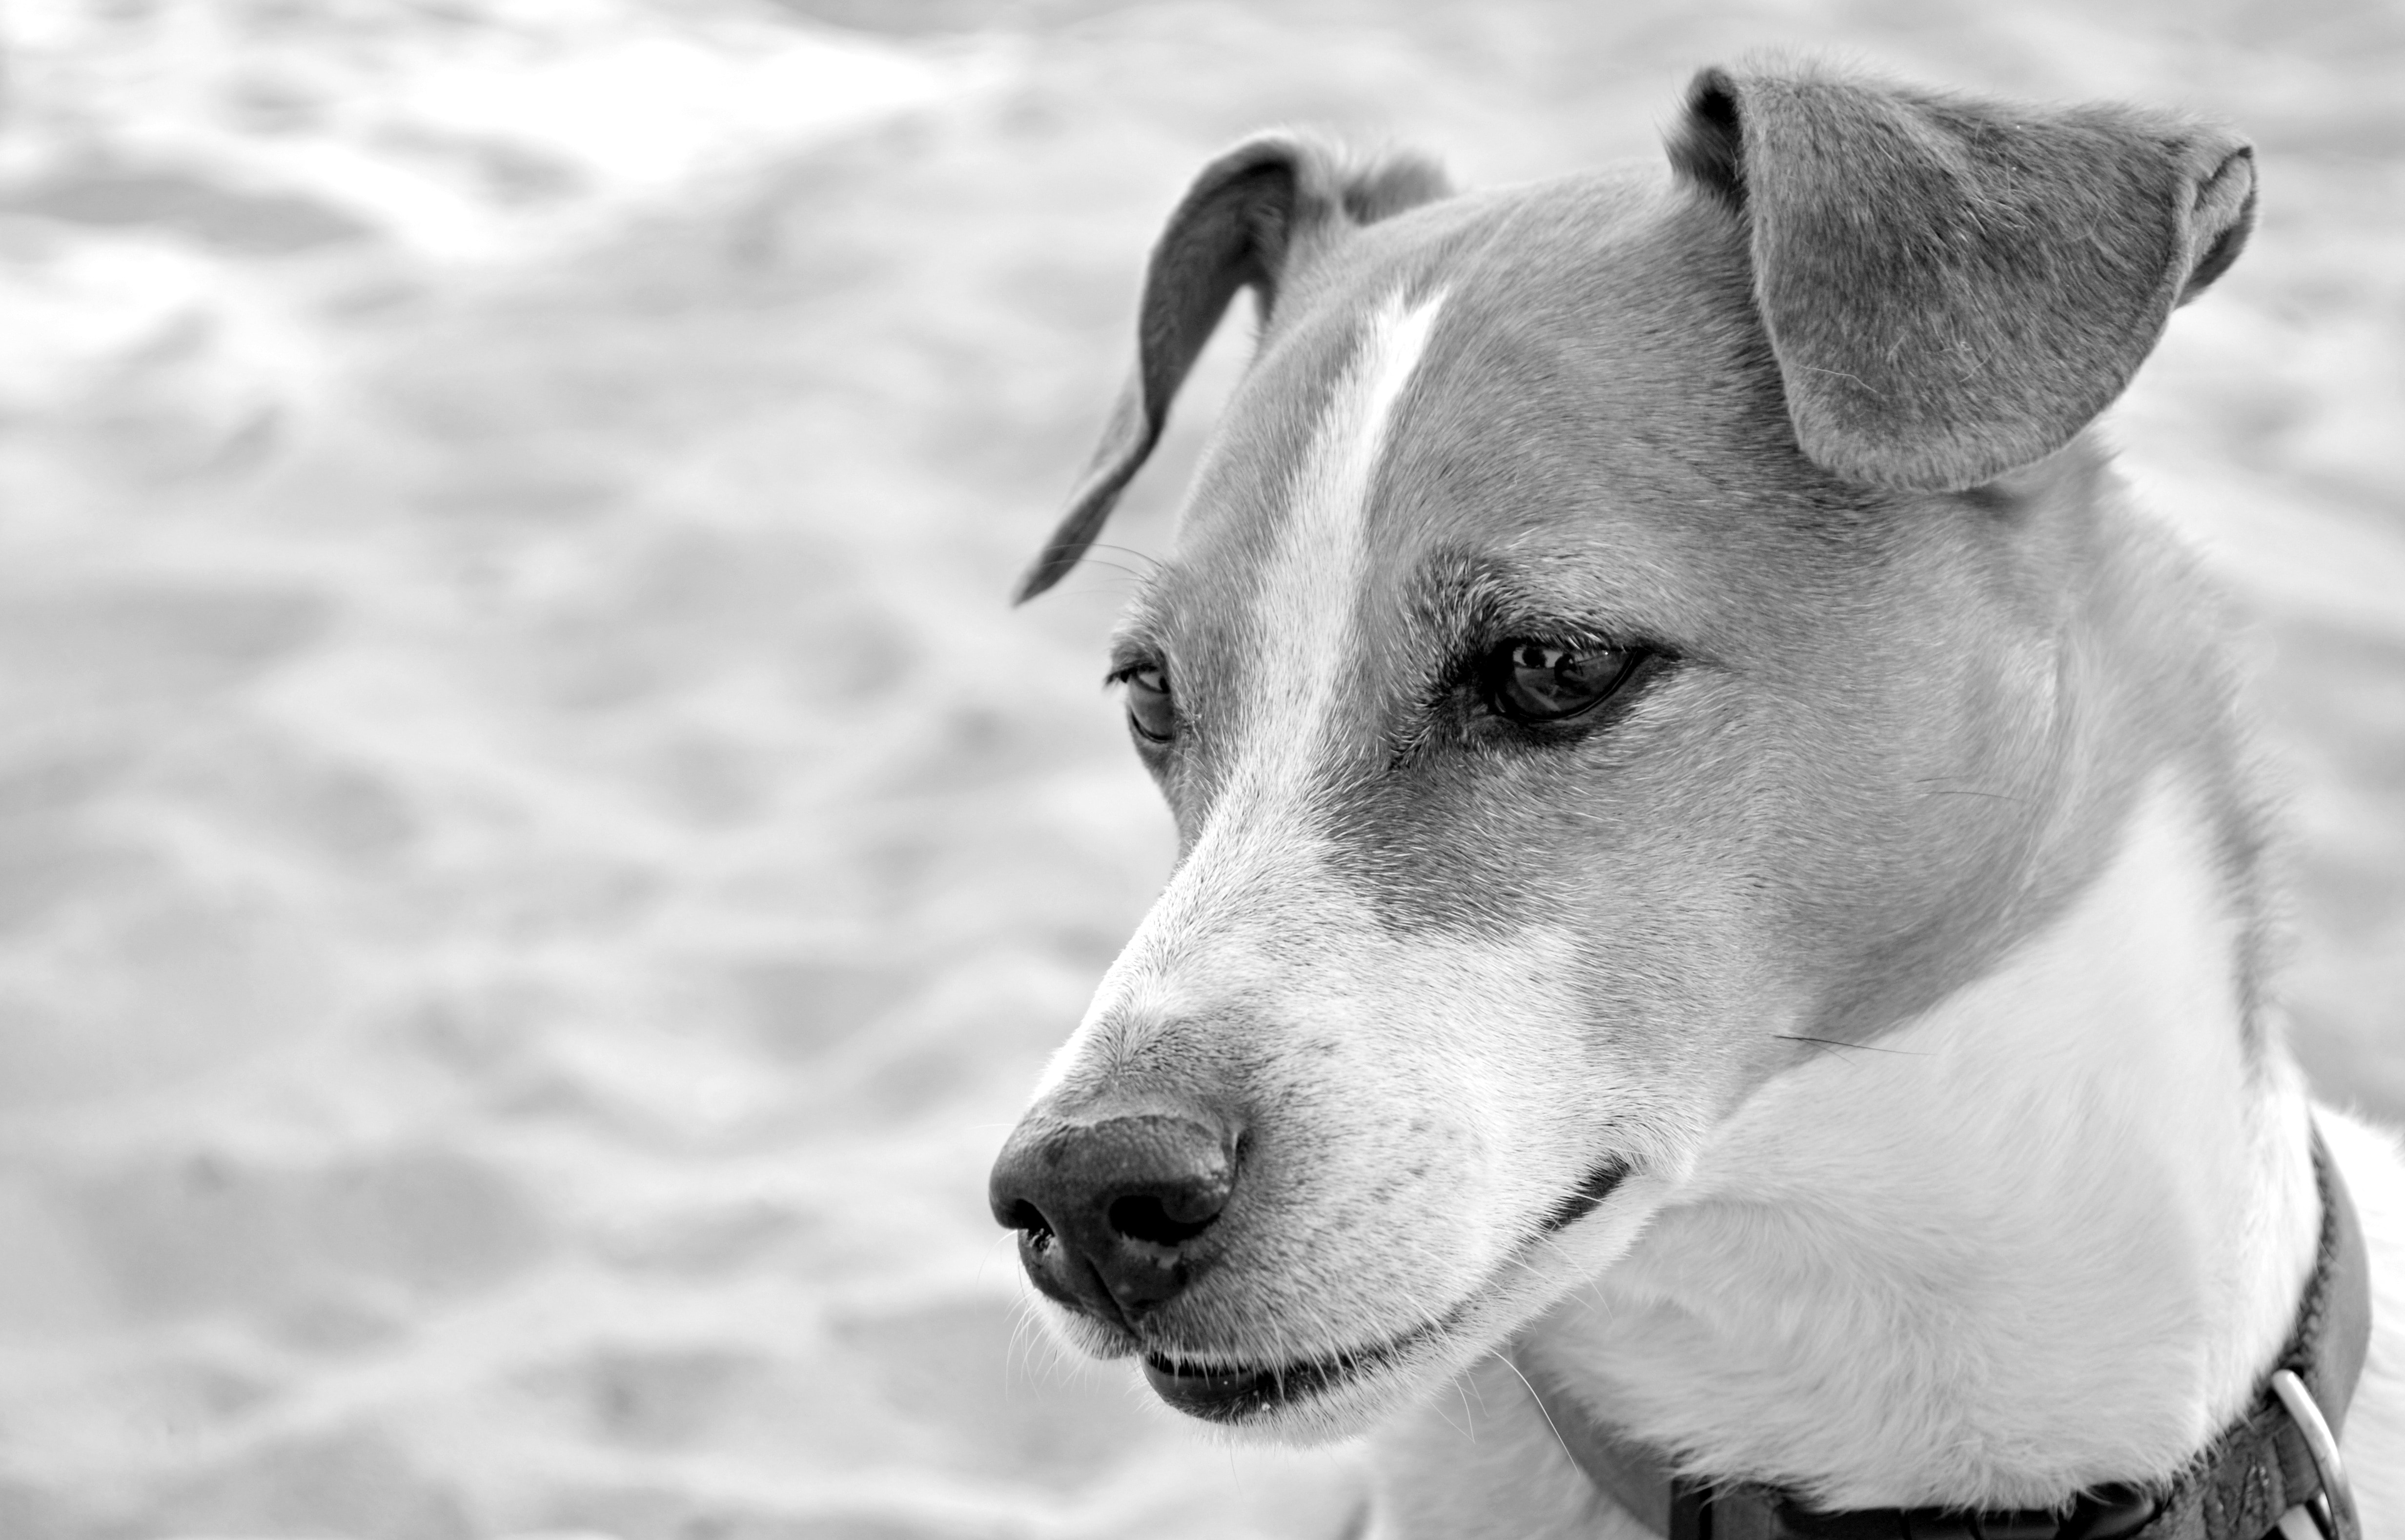 greyscale photo of short coated dog